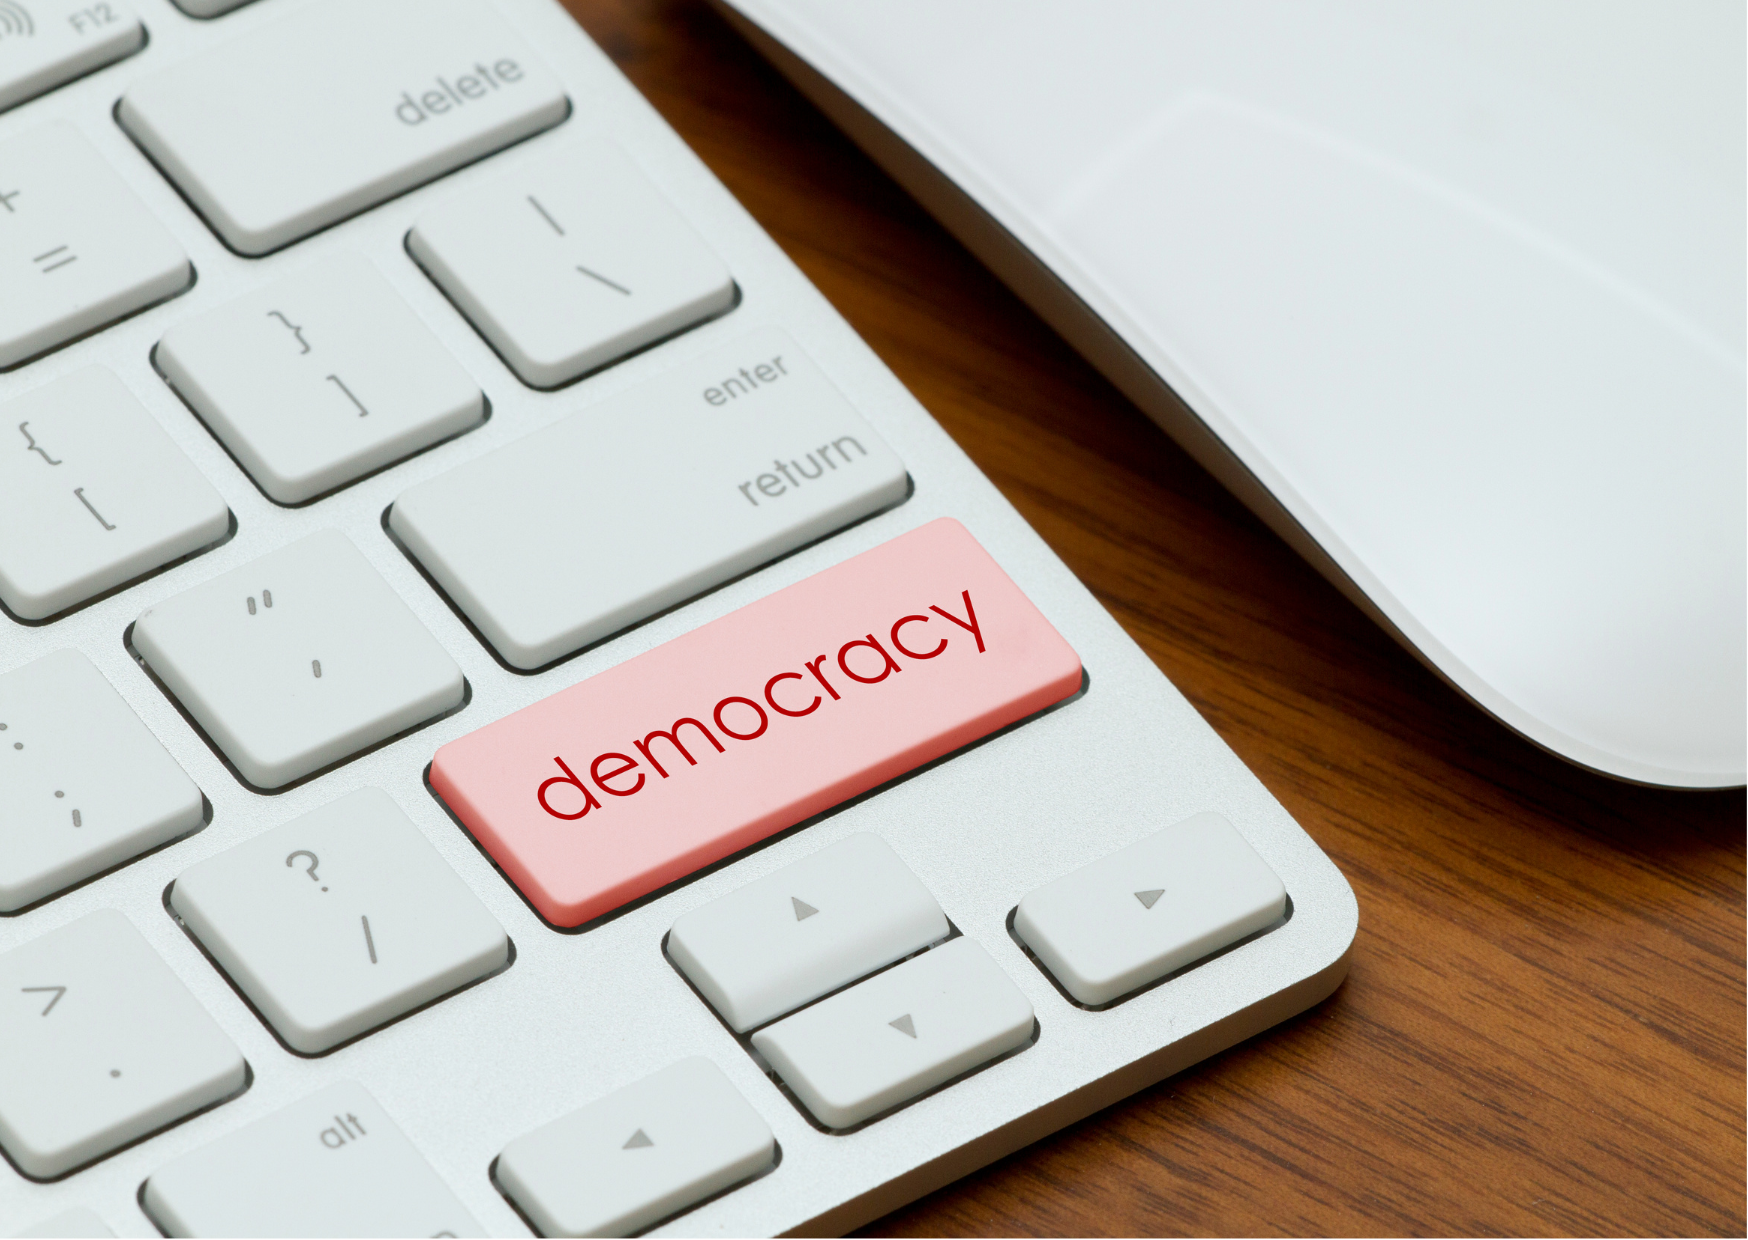 25 marzo | La democrazia digitale tra libertà e sorveglianza